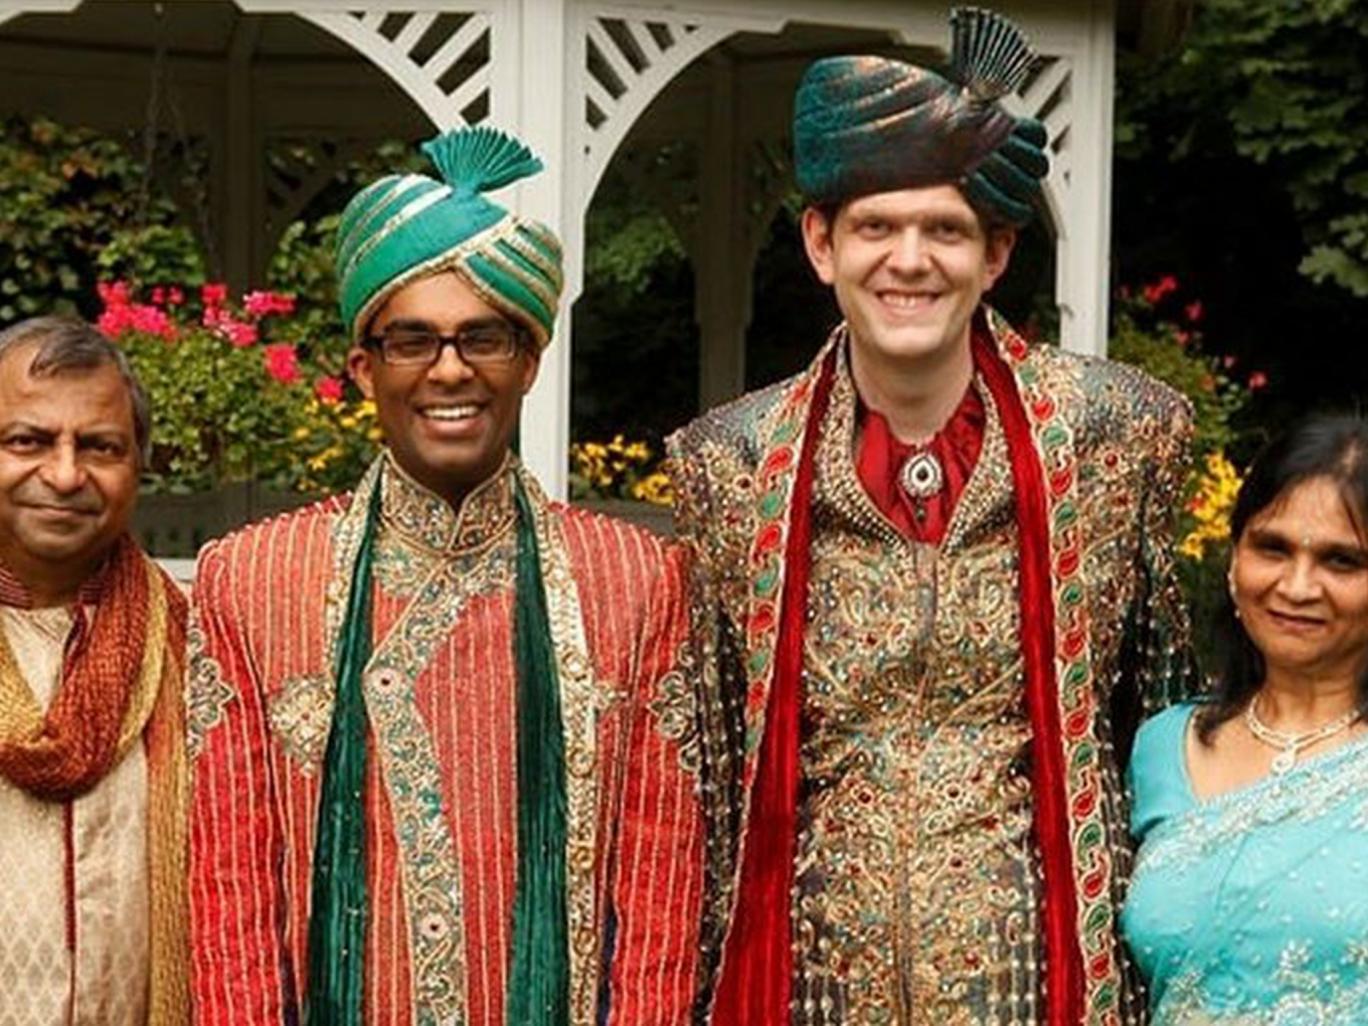 Hatalmas esküvőt szerveztek a hindu szülők meleg fiuknak 